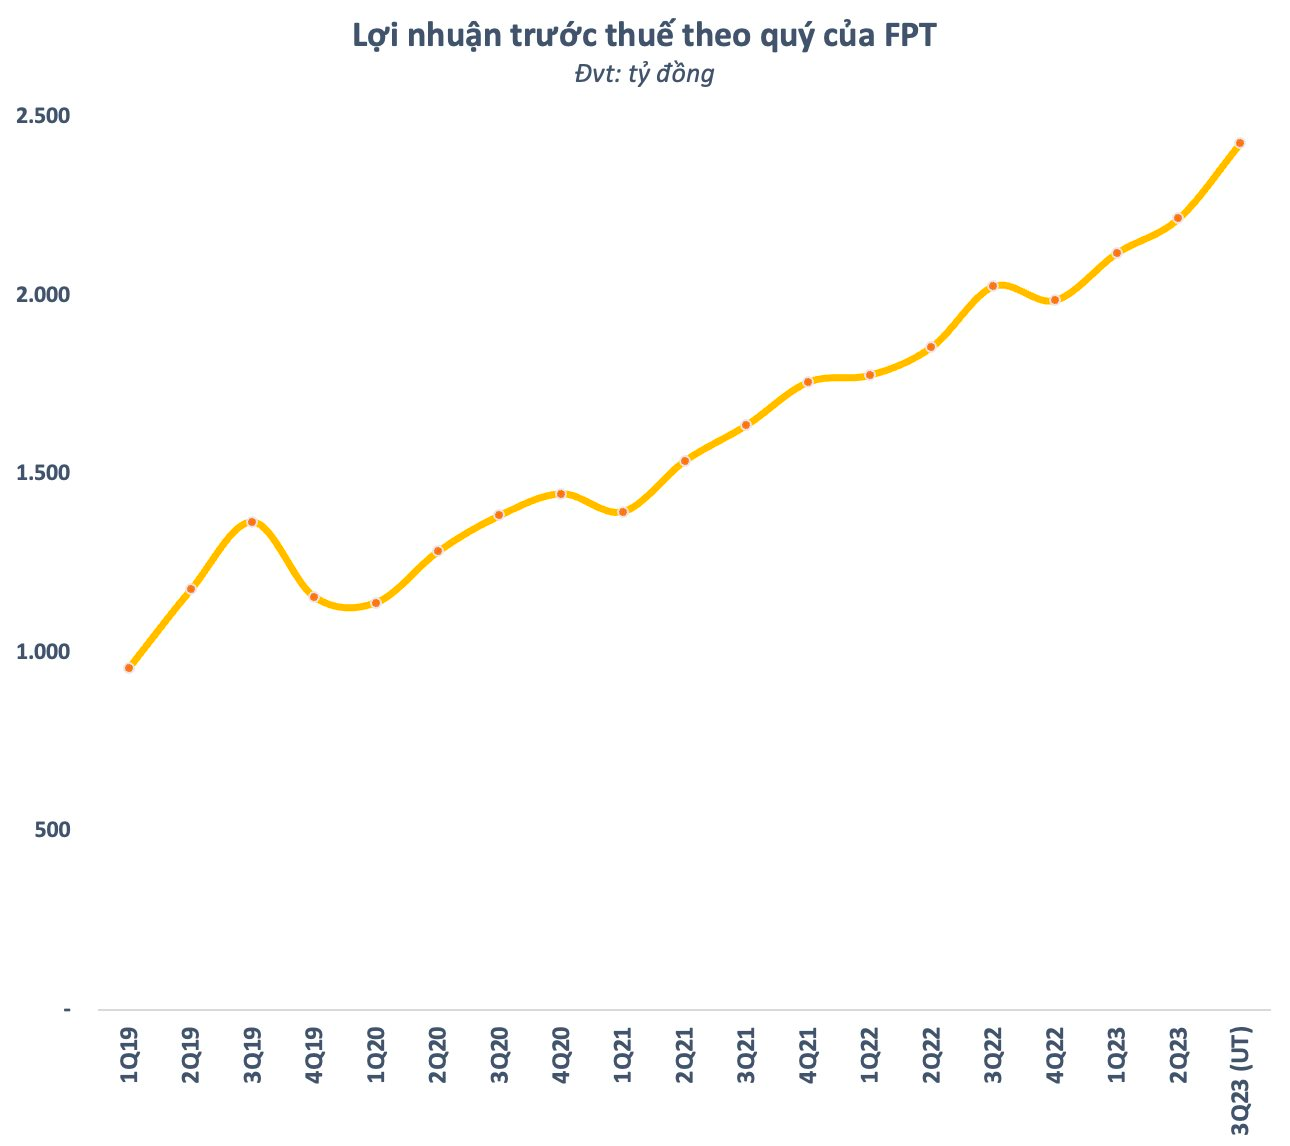 FPT tiếp tục phá đỉnh lợi nhuận trong quý 3, tăng trưởng gần 20% so với cùng kỳ năm trước - Ảnh 1.